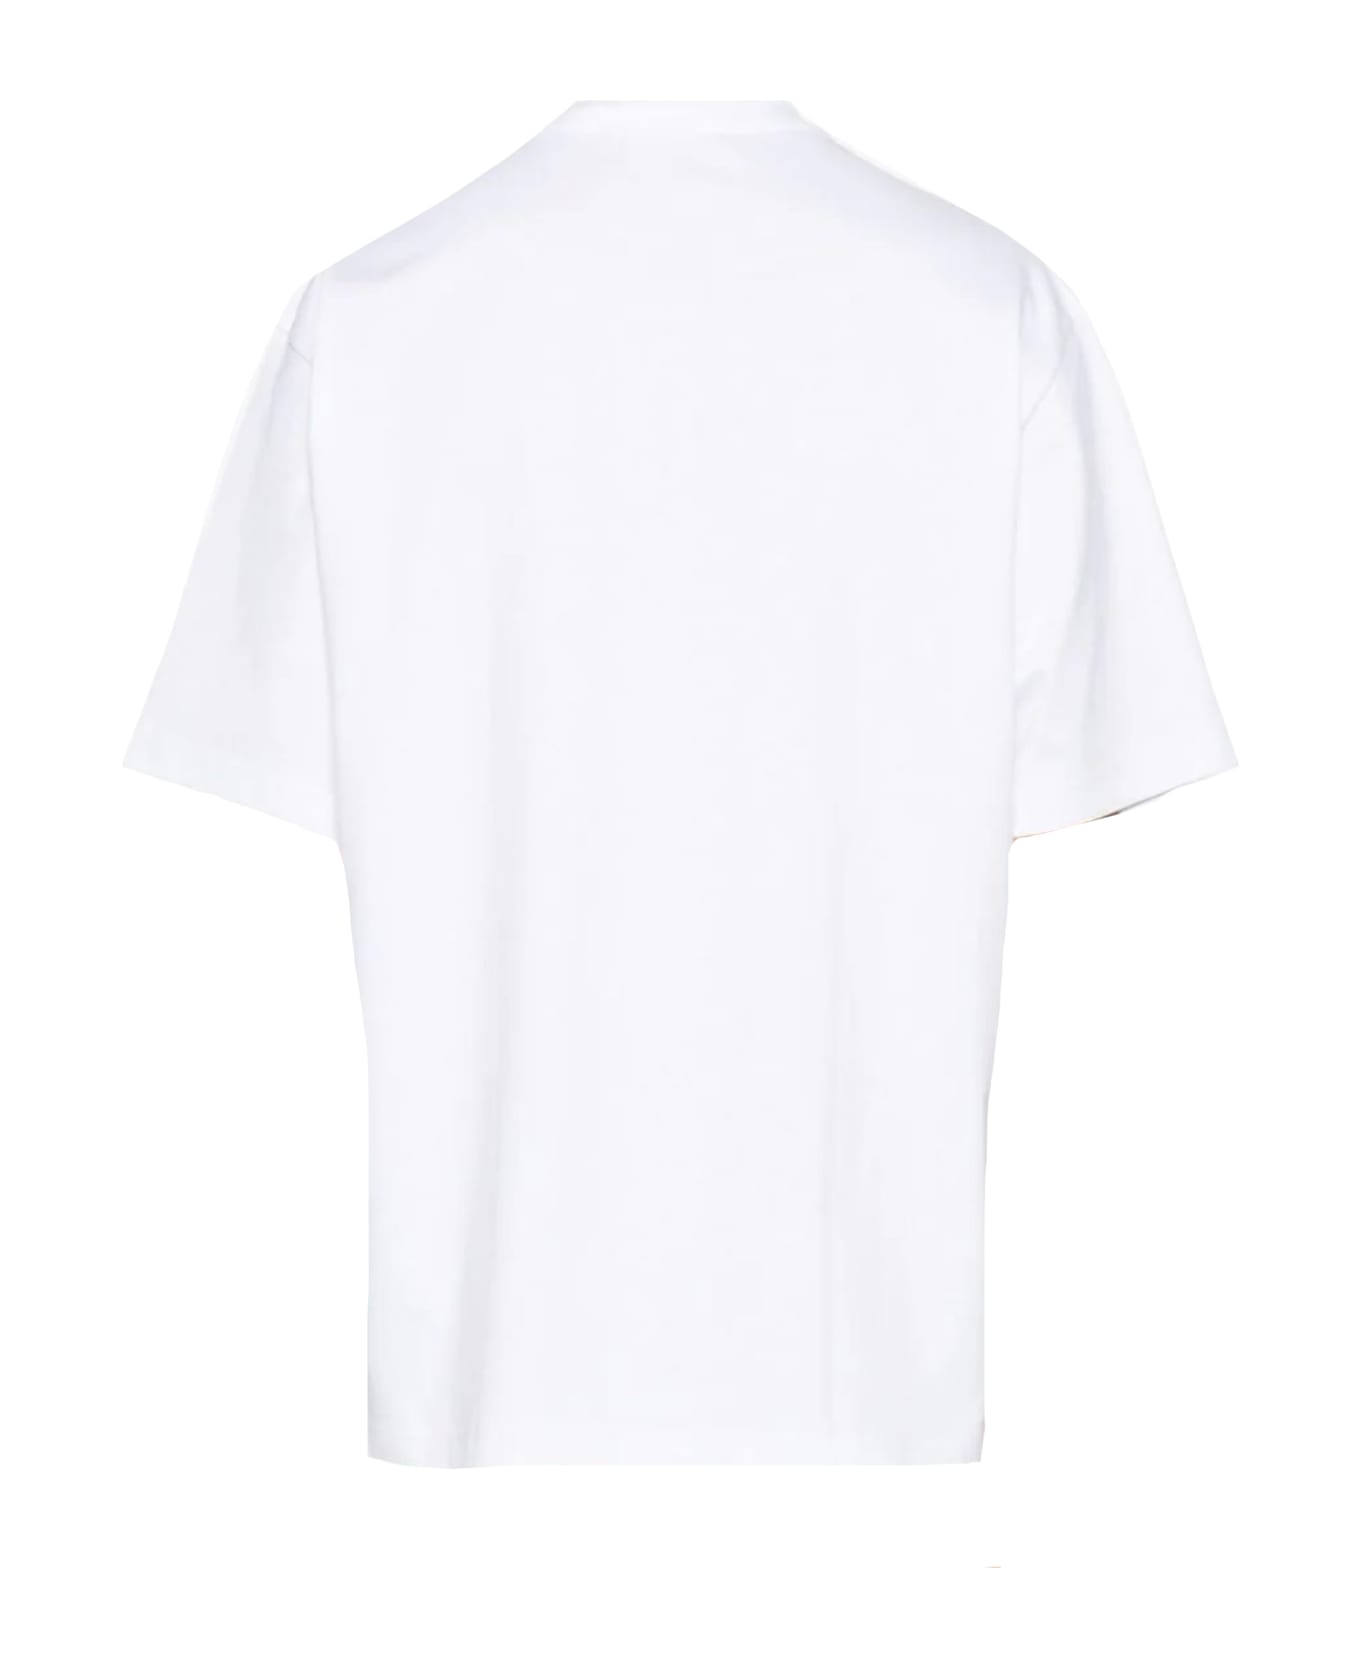 Axel Arigato White Cotton T-shirt - White